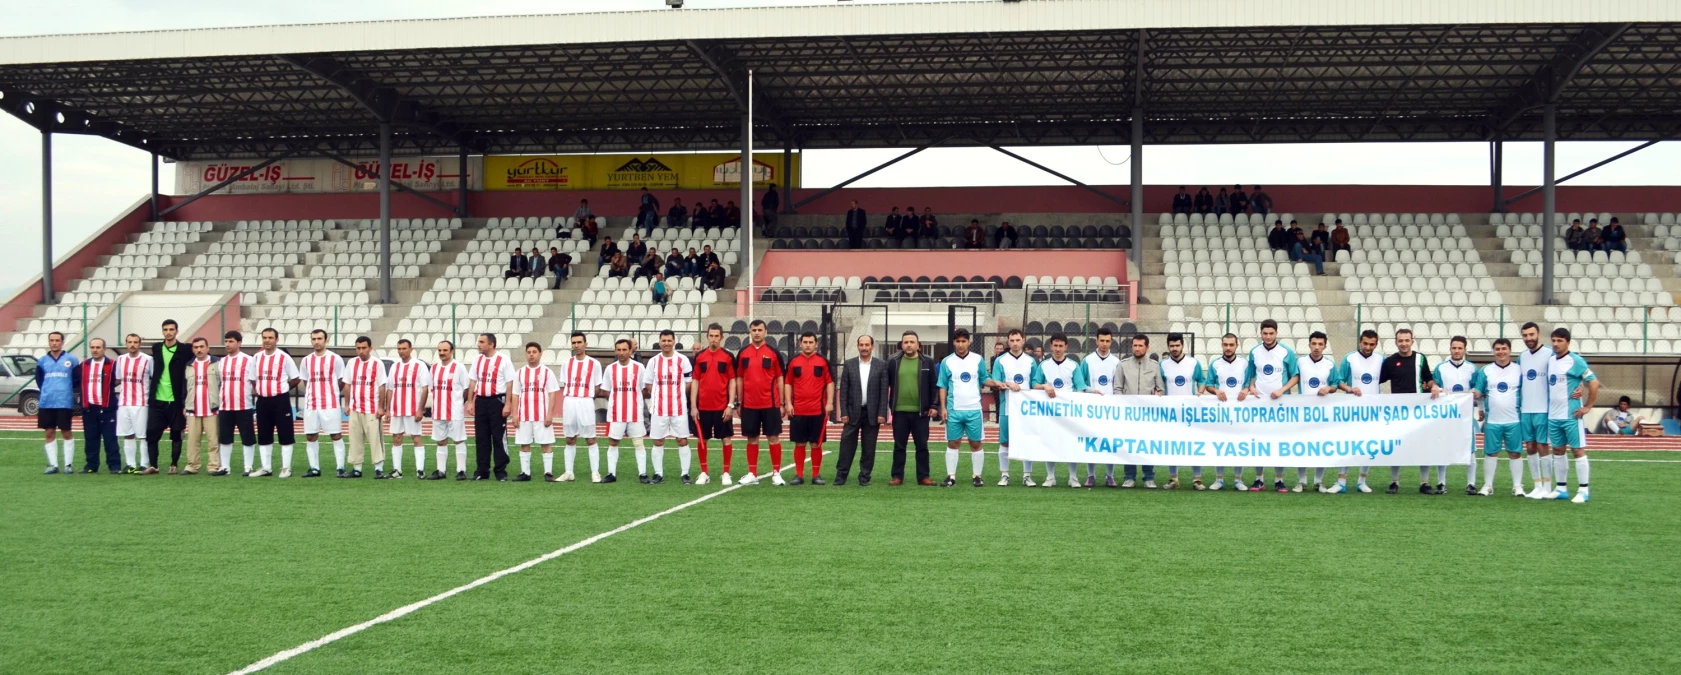 Alaca Belediyesi Futbol Turnuvası Başladı